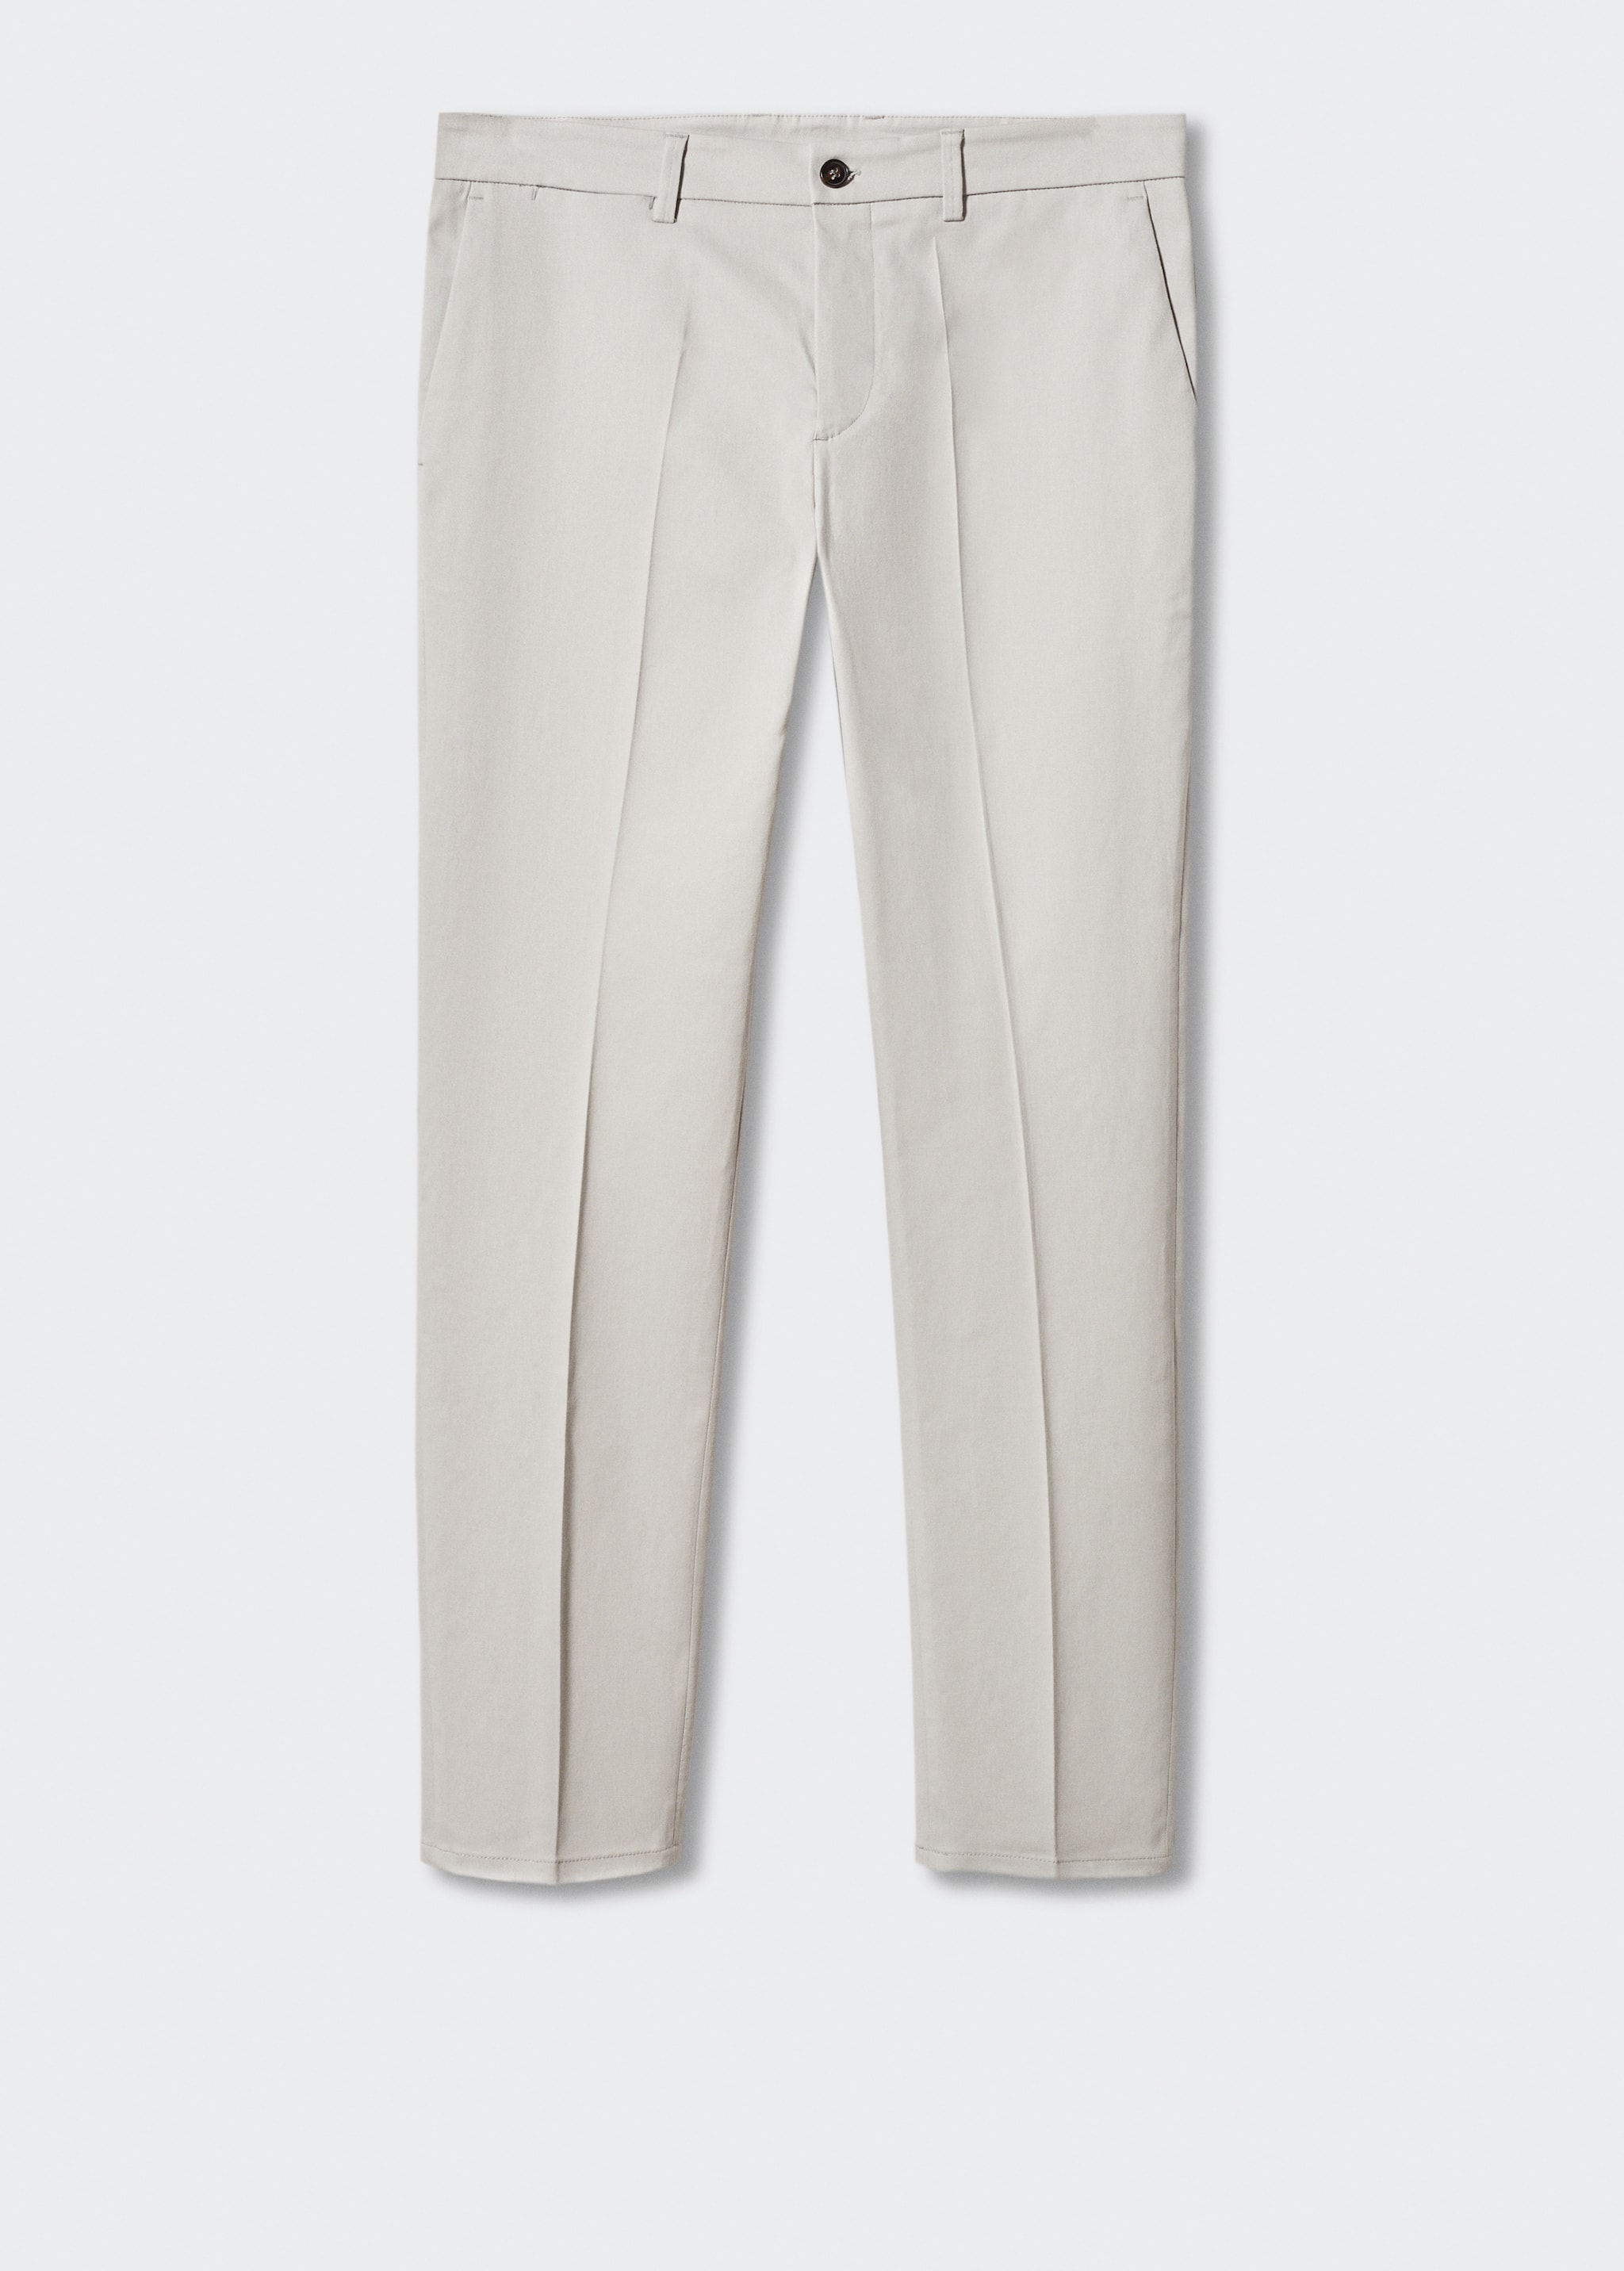 Pantalón chino slim fit - Artículo sin modelo